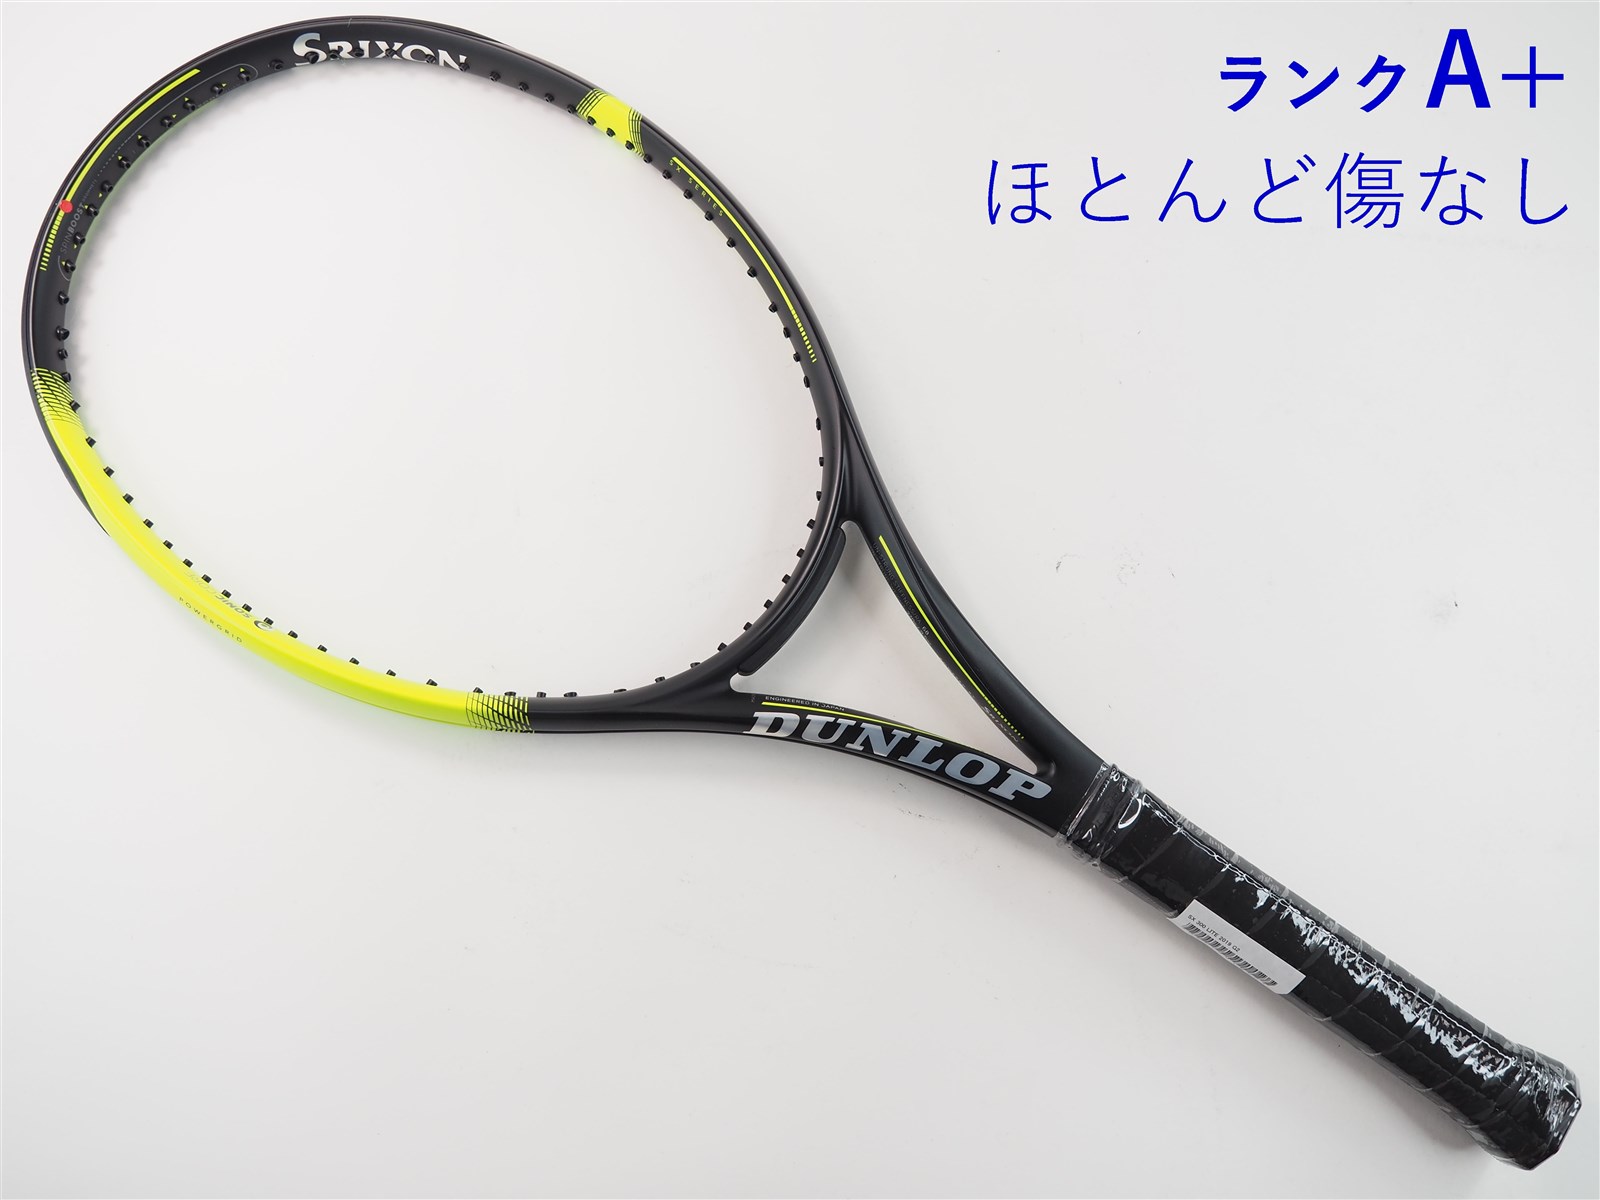 中古】ダンロップ エスエックス300 ライト 2019年モデルDUNLOP SX 300 LITE 2019(G2)【中古 テニスラケット】【送料無料】の通販・販売|  ダンロップ| テニスサポートセンターへ